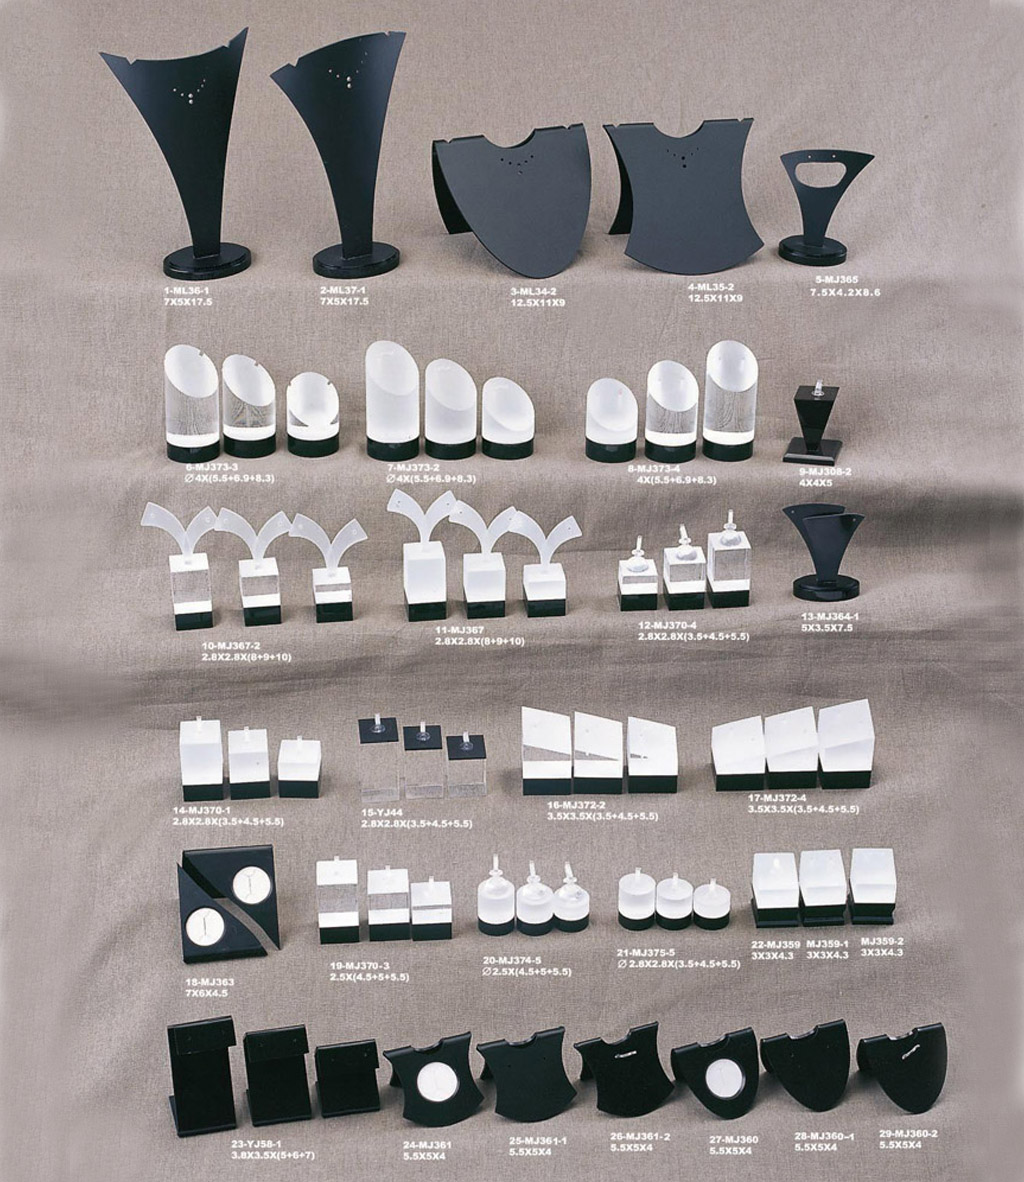 Mode weißen Acryl-Schmuck-Display schwarzer Acrylständer und Acryl-Display mit Logo für Ring / Ohrring / panden usw.